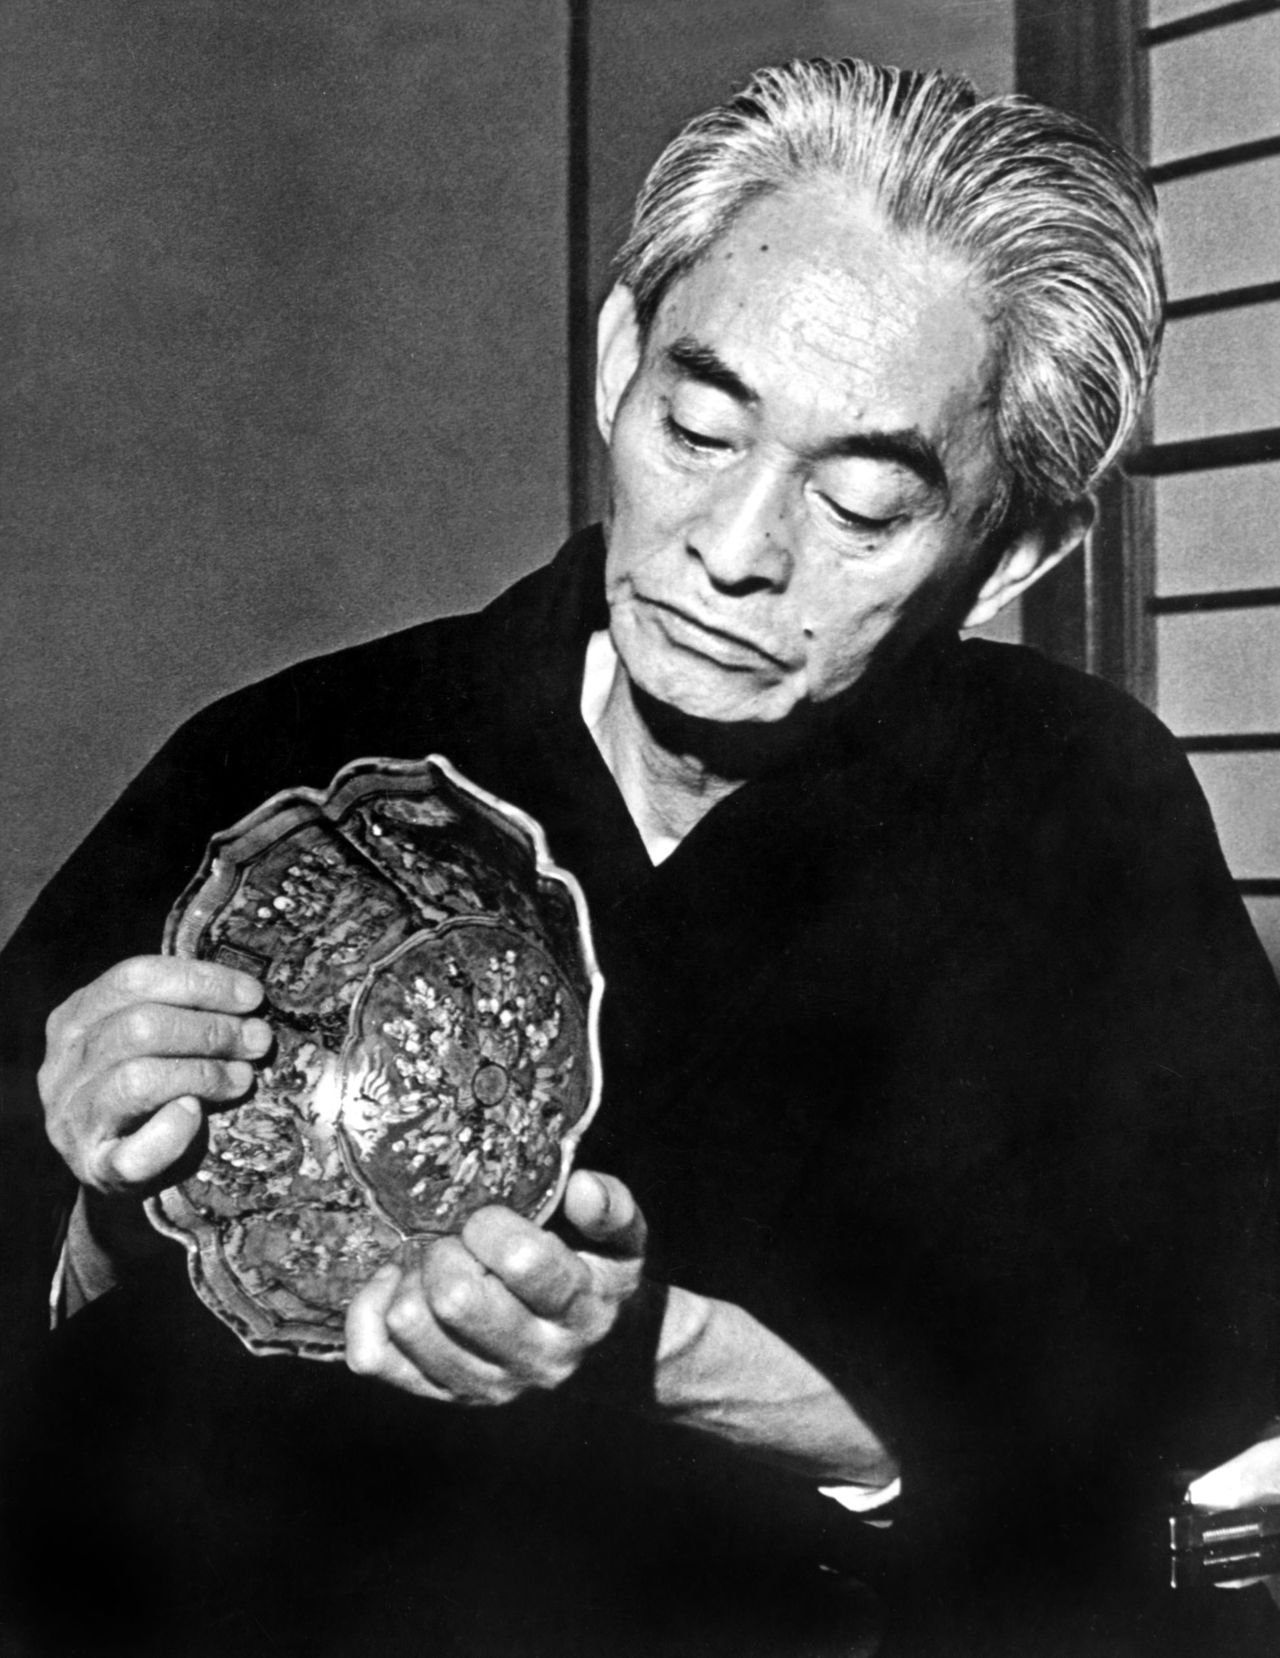 كاواباتا ياسوناري يتفحص عملا فنيا في منزله في زوشي بمحافظة كاناغاوا، في أبريل/نيسان عام 1972 (حقوق الصورة لأفلو).